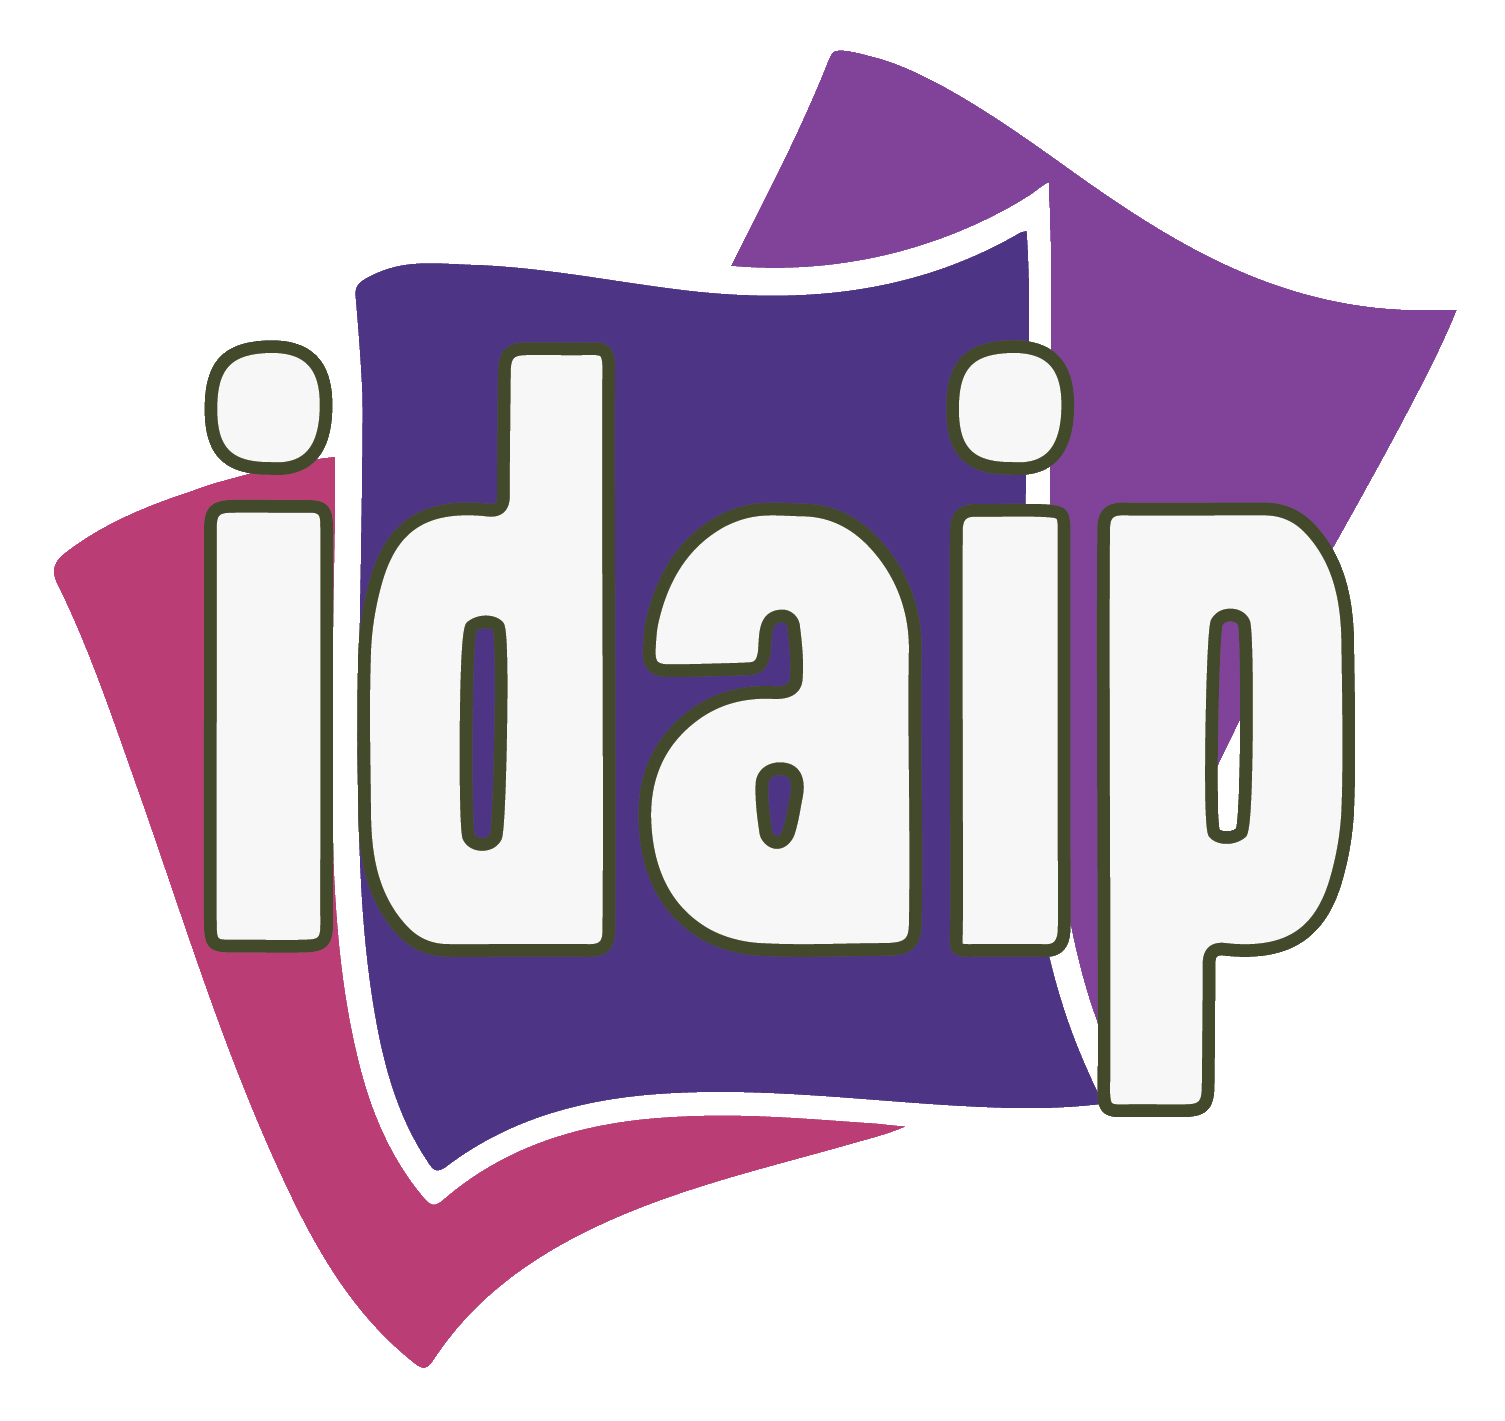 Logo del IDAIP